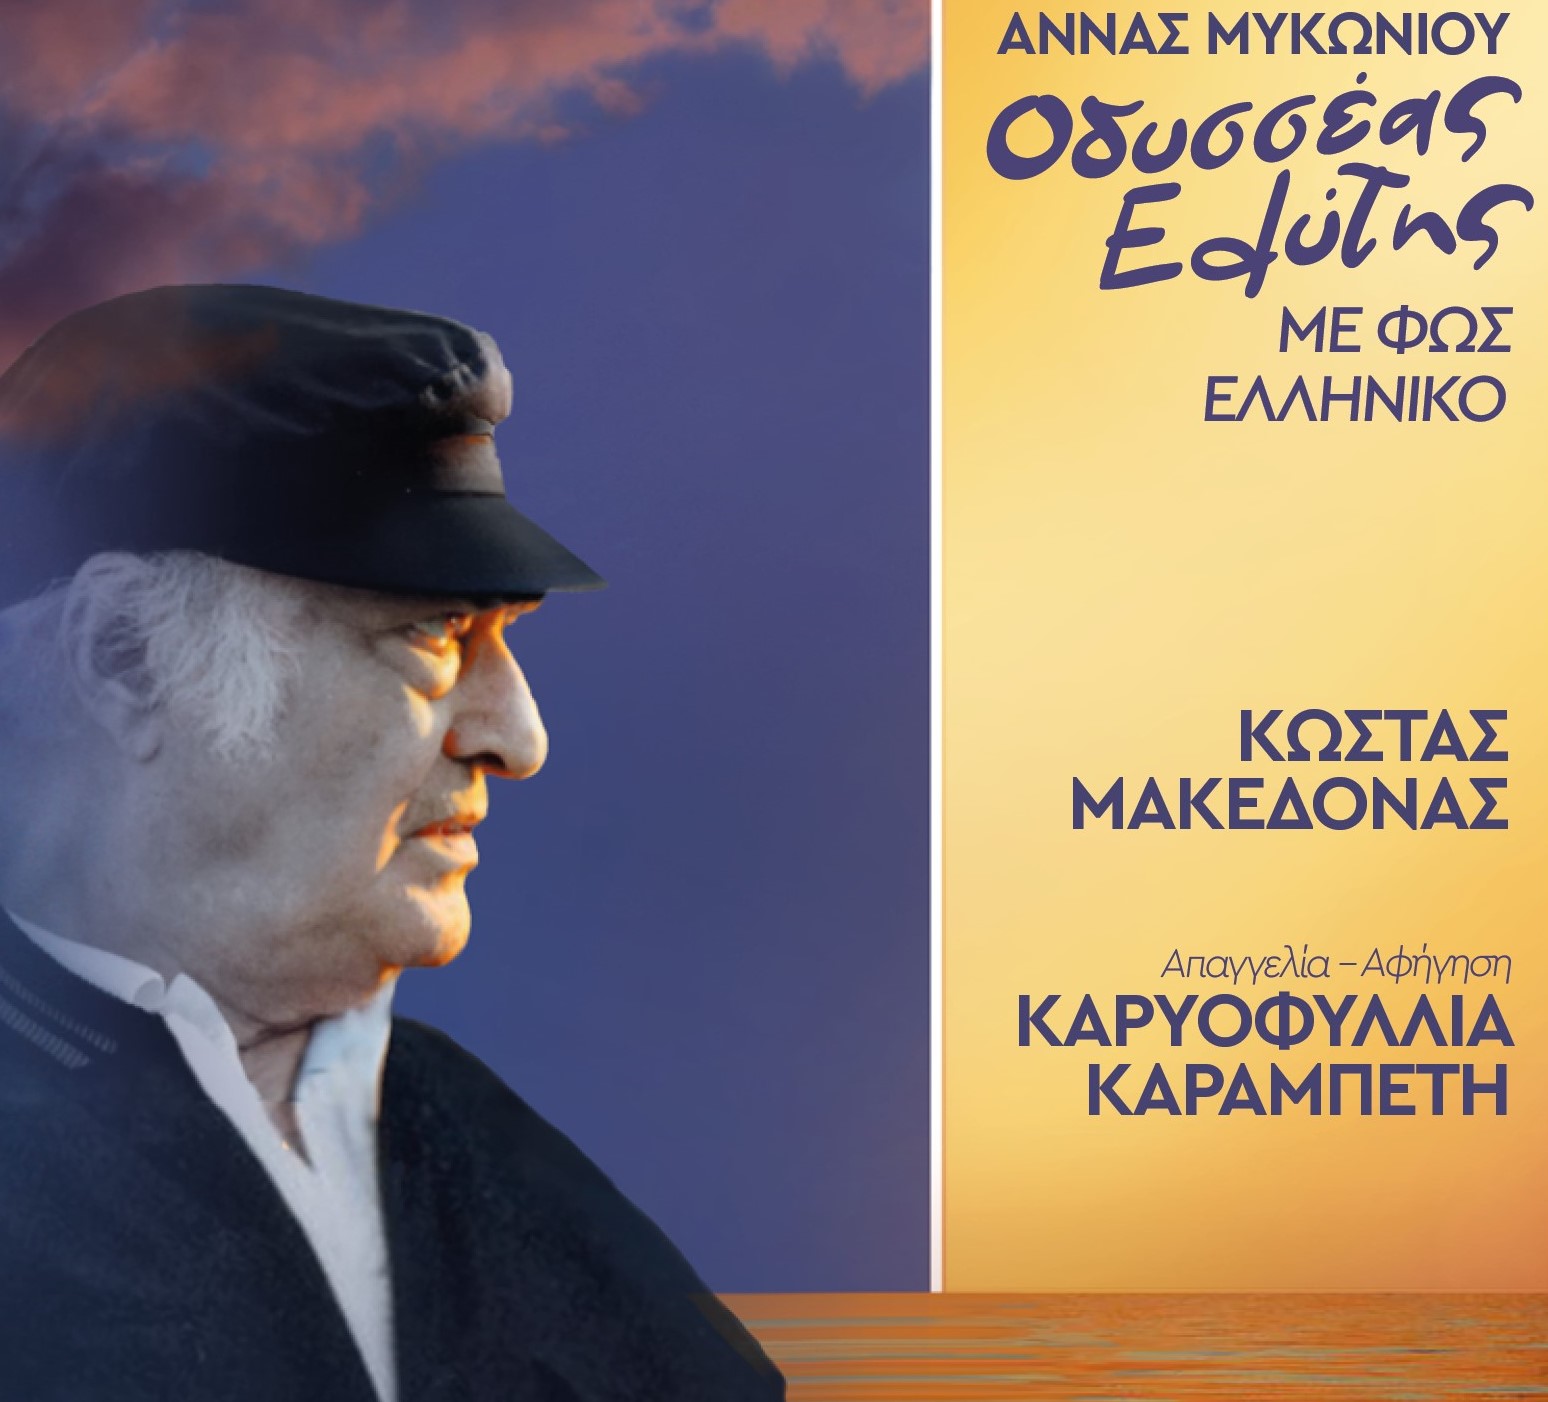 «Οδυσσέας Ελύτης-με φως ελληνικό»: Παγκόσμια ημέρα ποίησης στο Μέγαρο Μουσικής Θεσσαλονίκης